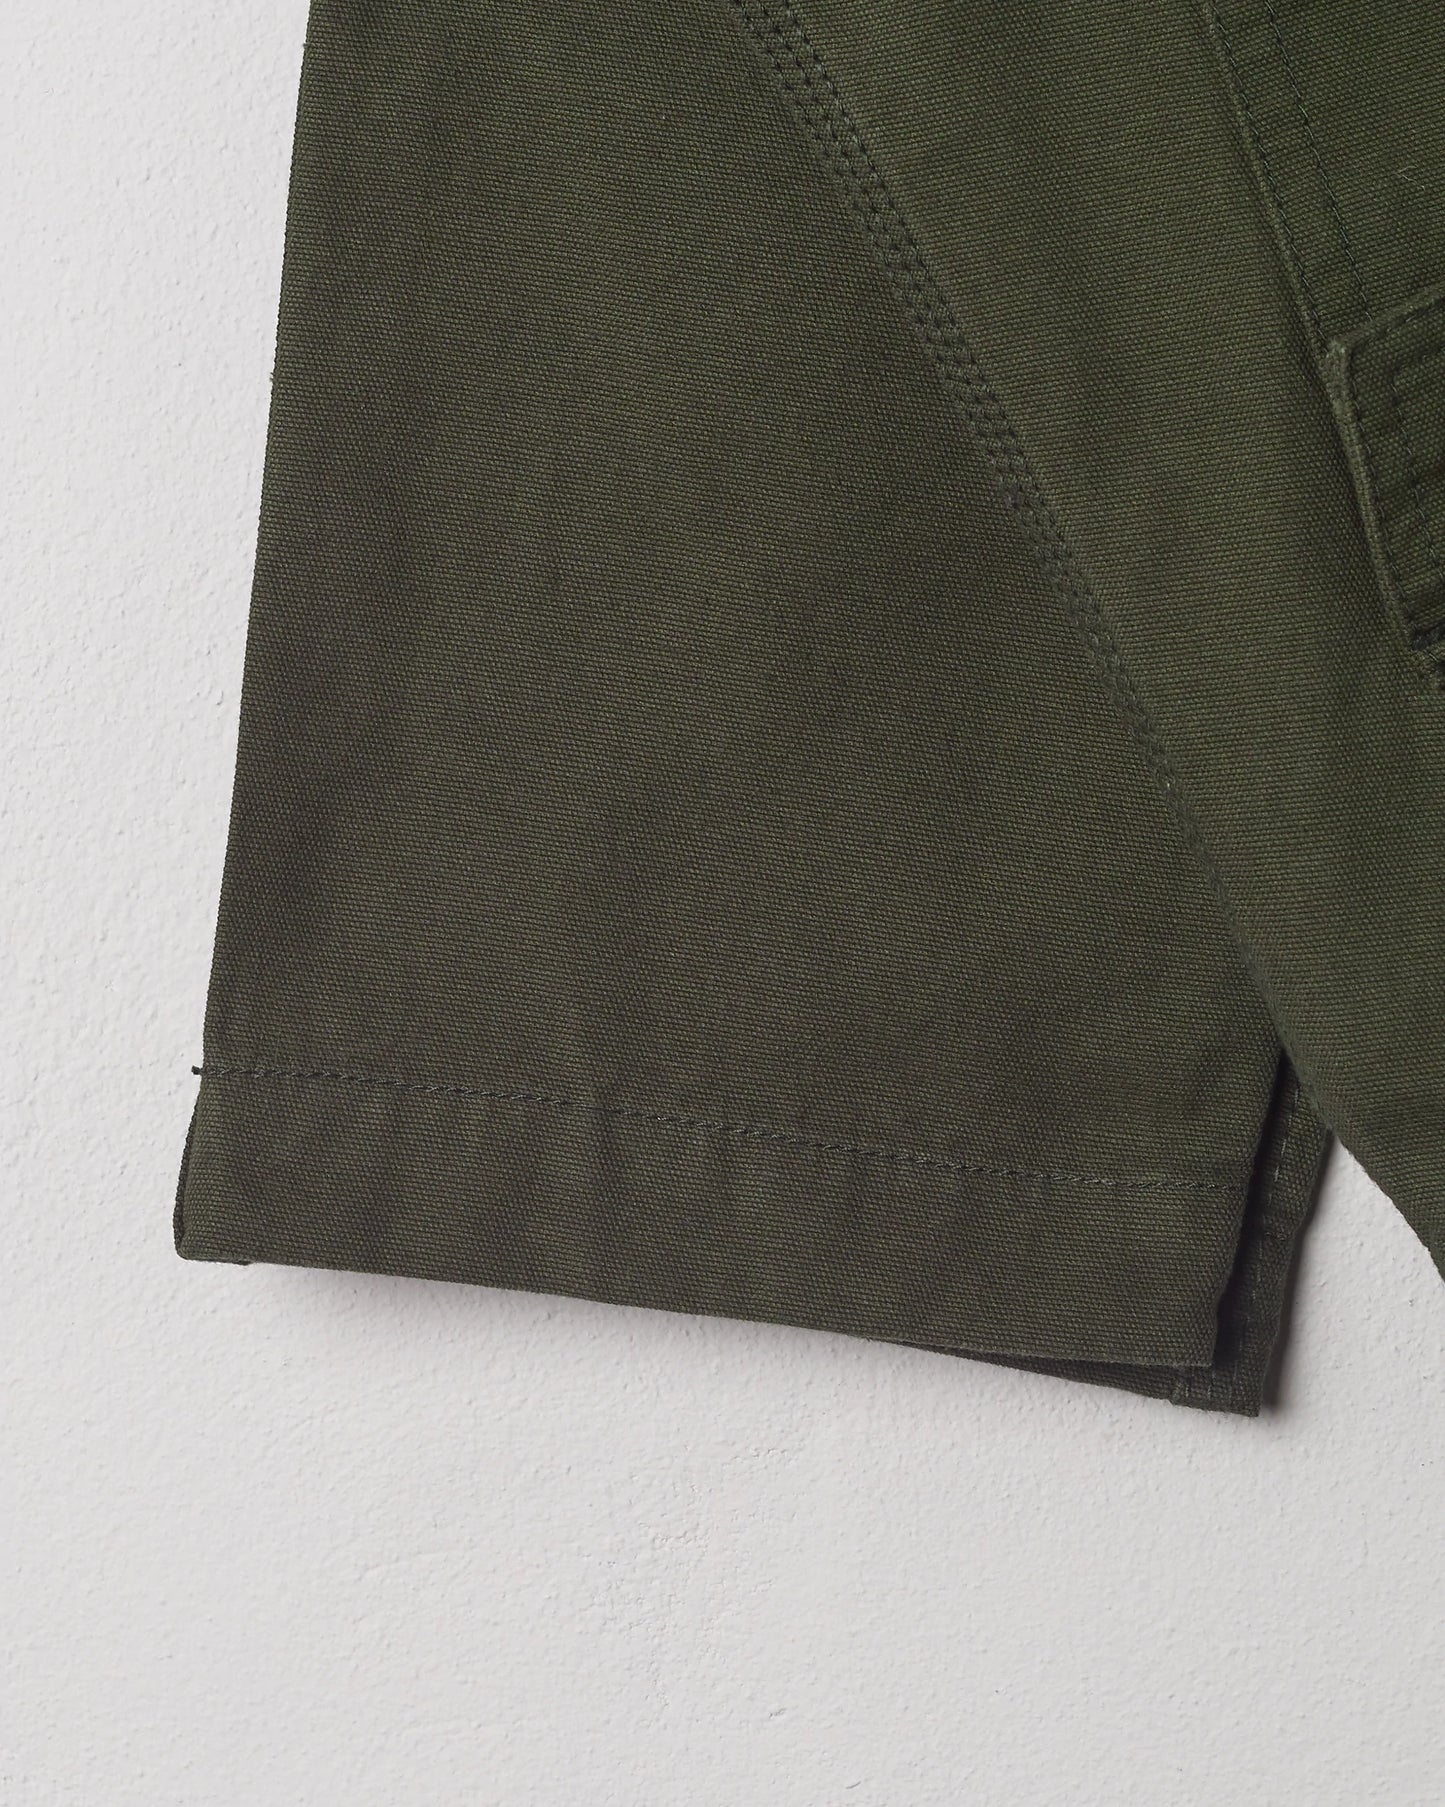 Uskees Workwear Pants - Vine Green #5005